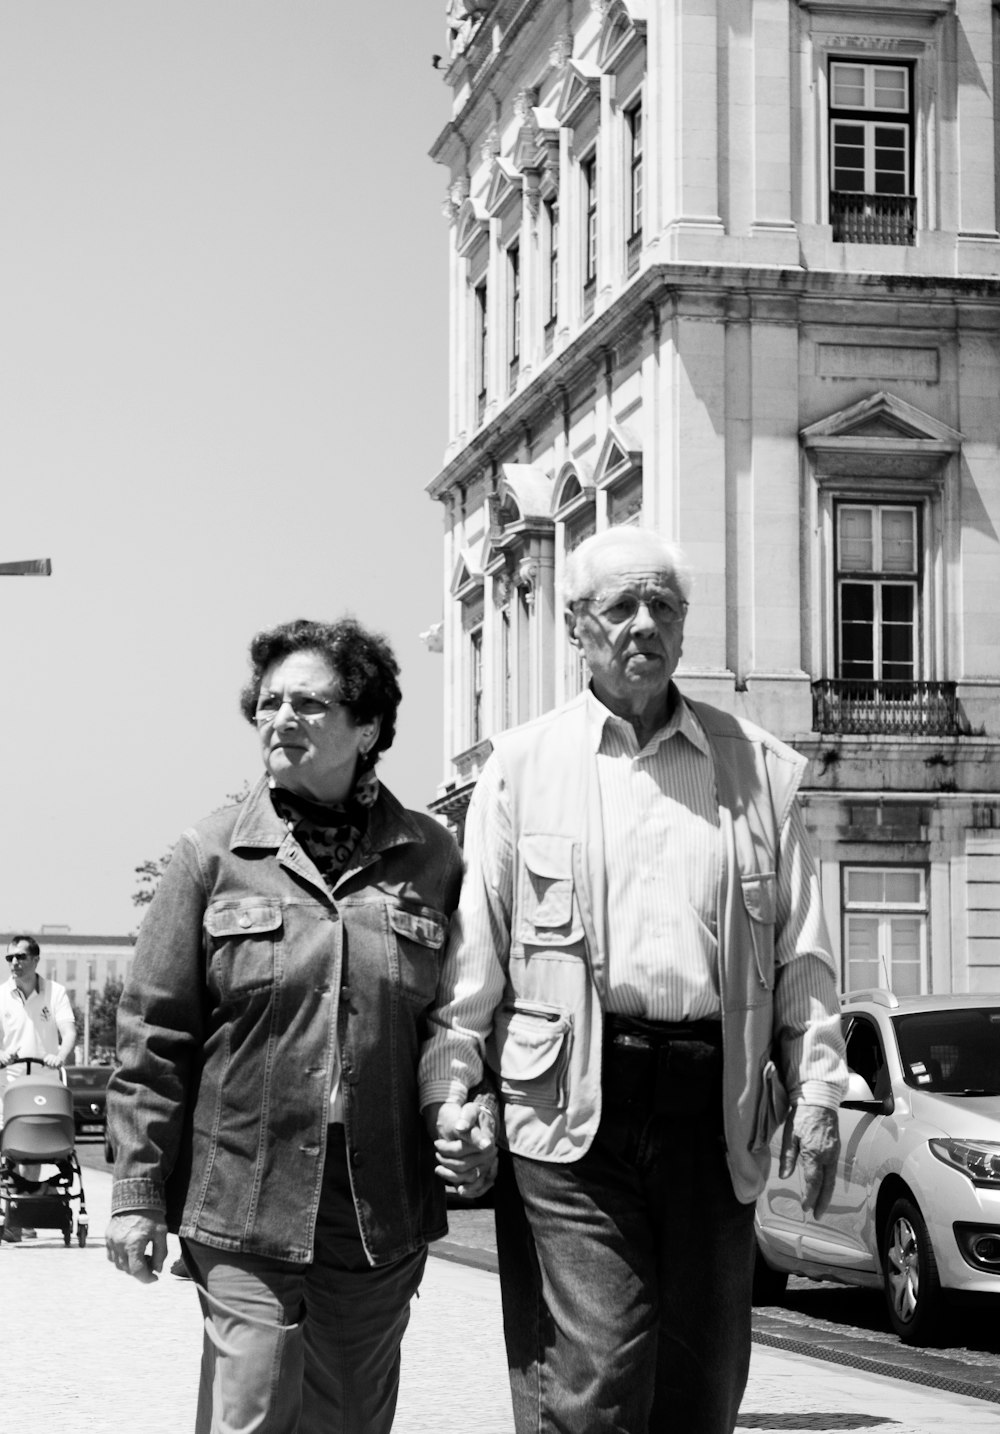 two people walking on street